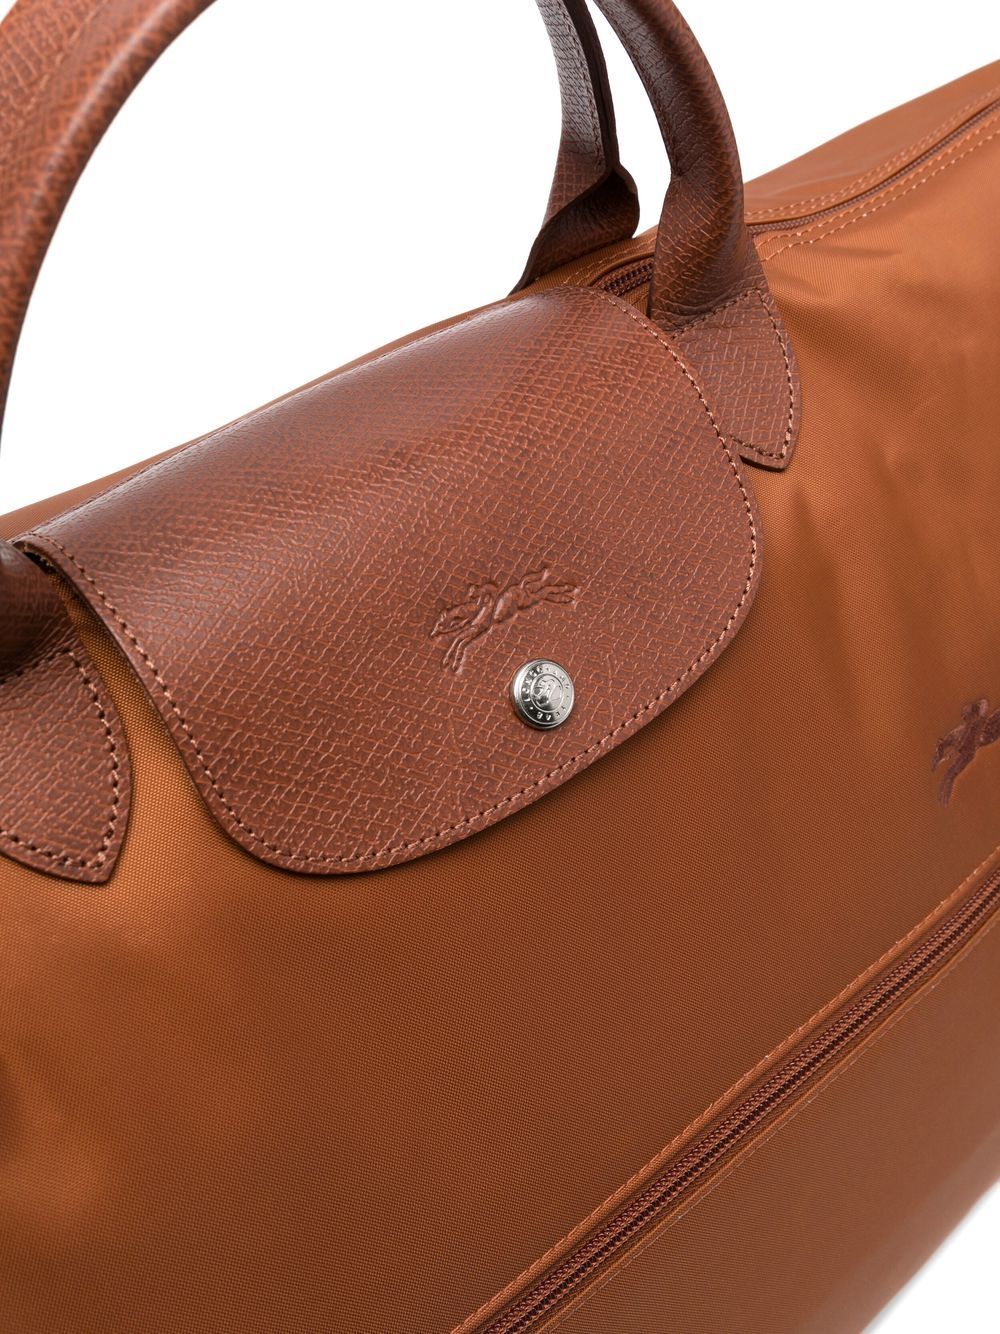 Longchamp Le Pliage Cuir Large Travel Bag - Farfetch